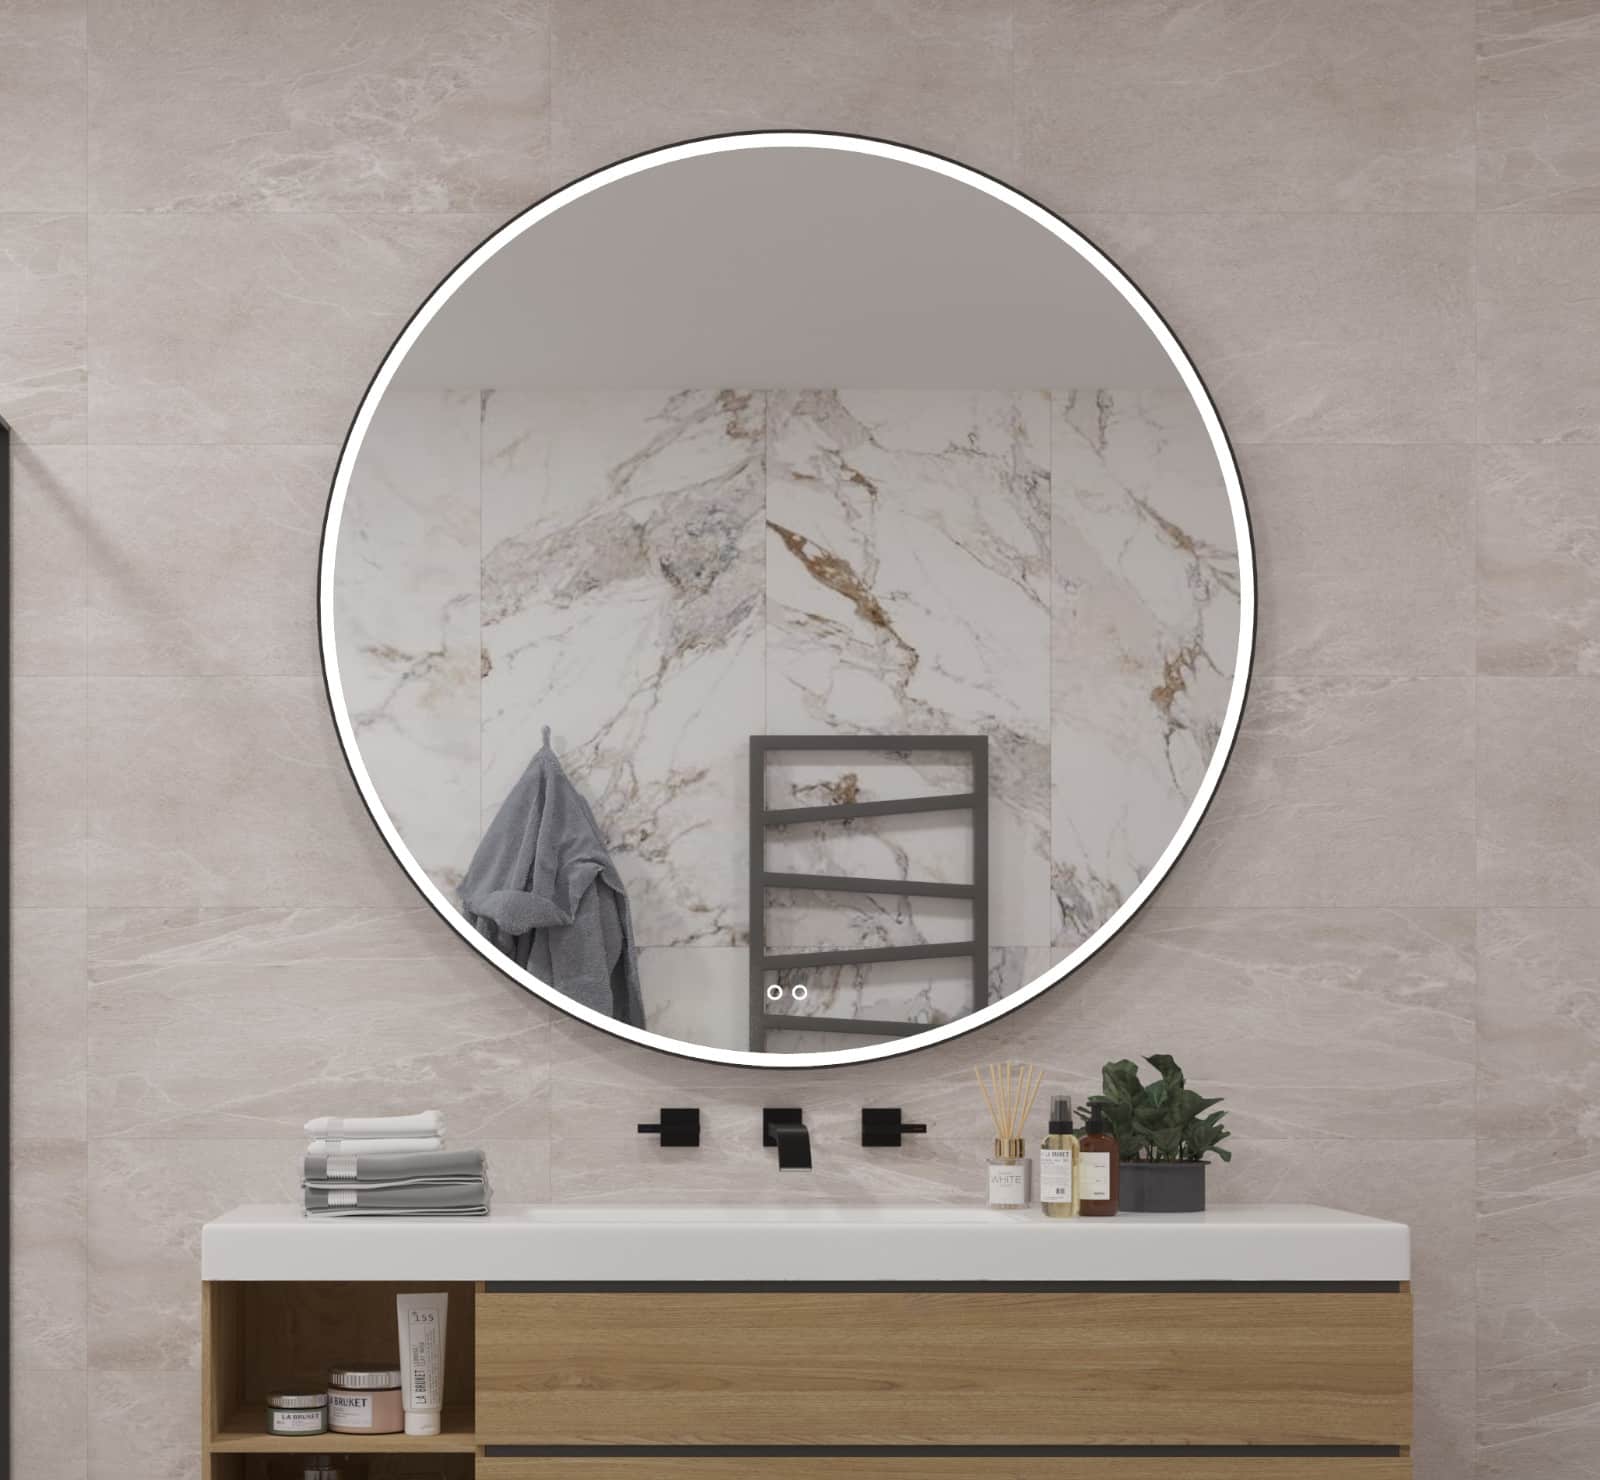 Grote ronde badkamer spiegel, afgewerkt met een hoogwaardig zwart frame en uitgevoerd met verlichting, spiegelverwarming, instelbare lichtkleur en dimfunctie